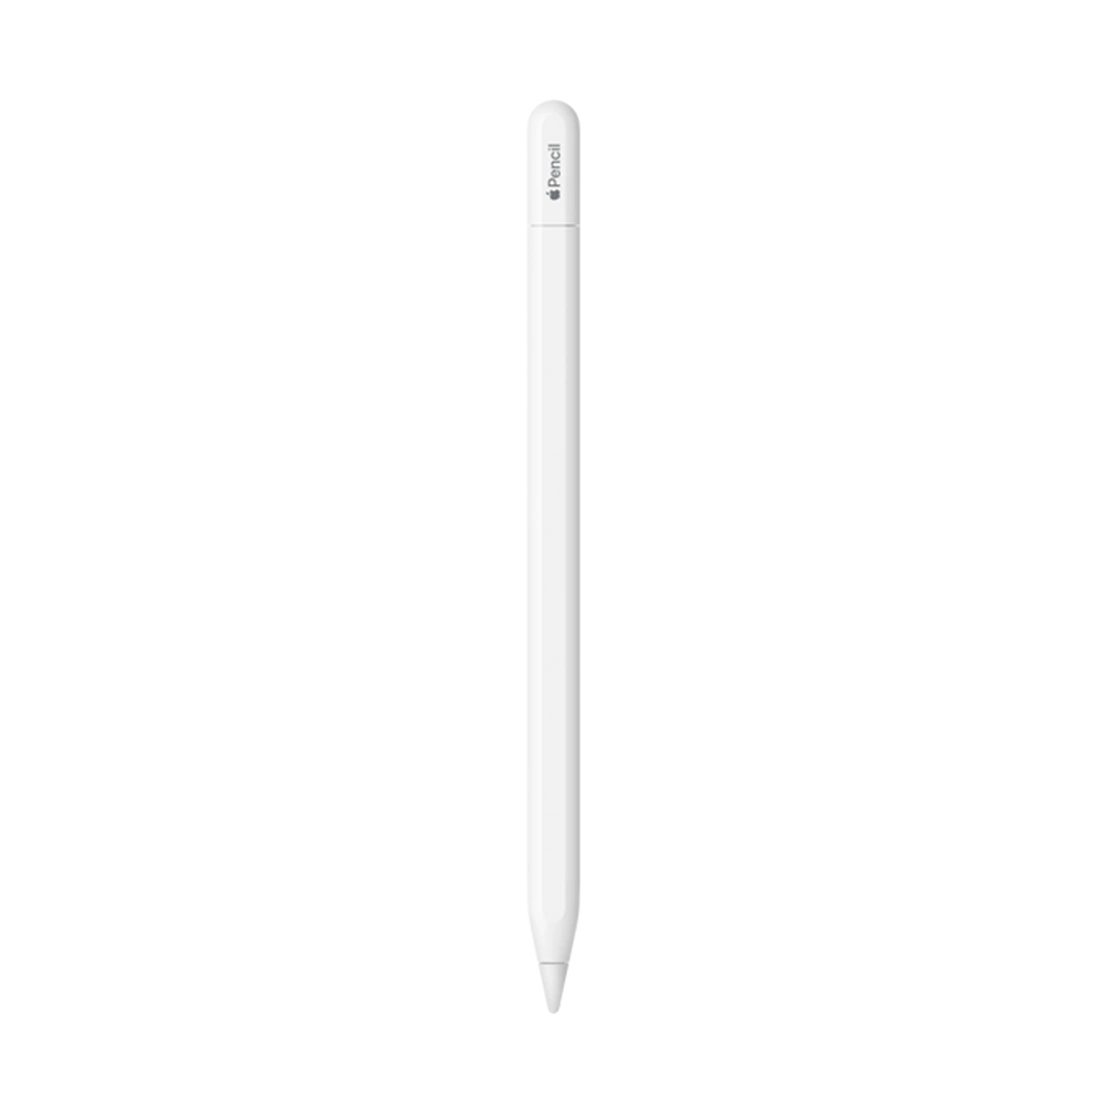 MUWA3 / Apple Pencil USBC  White  Guarantee